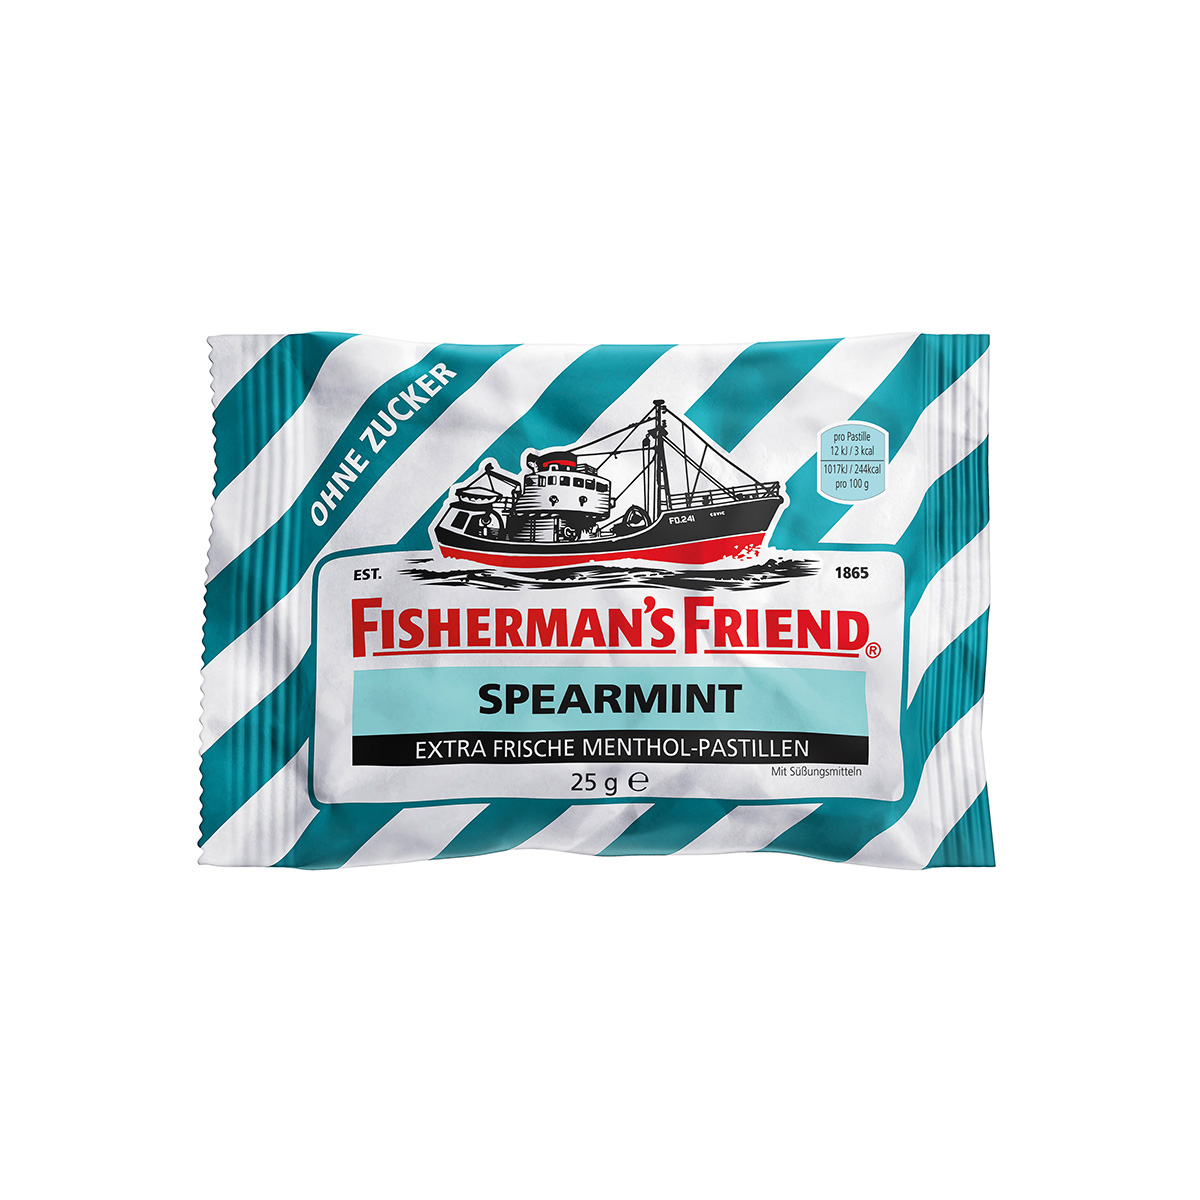 FISHERMAN'S FRIEND Spearmint ohne Zucker Inhalt 24